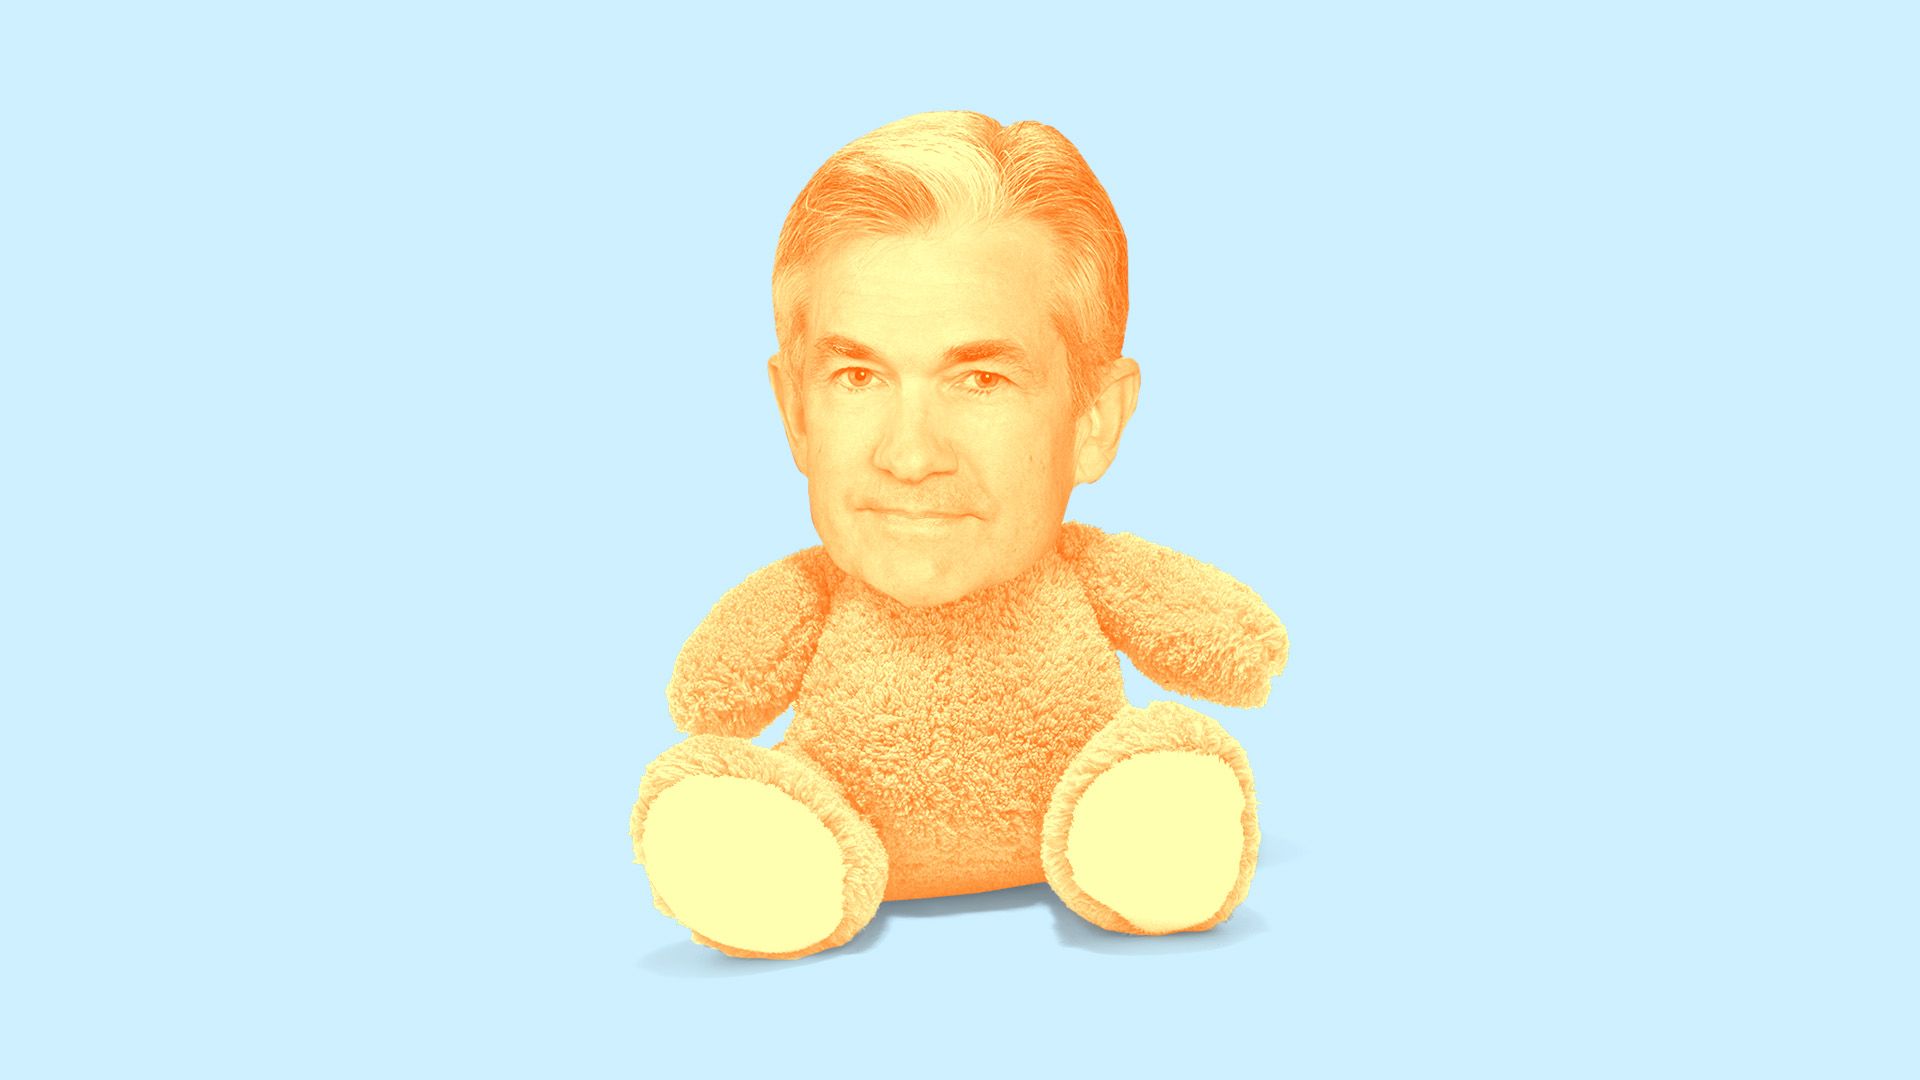 Illustration of Jay Powell's head on a teddy bear